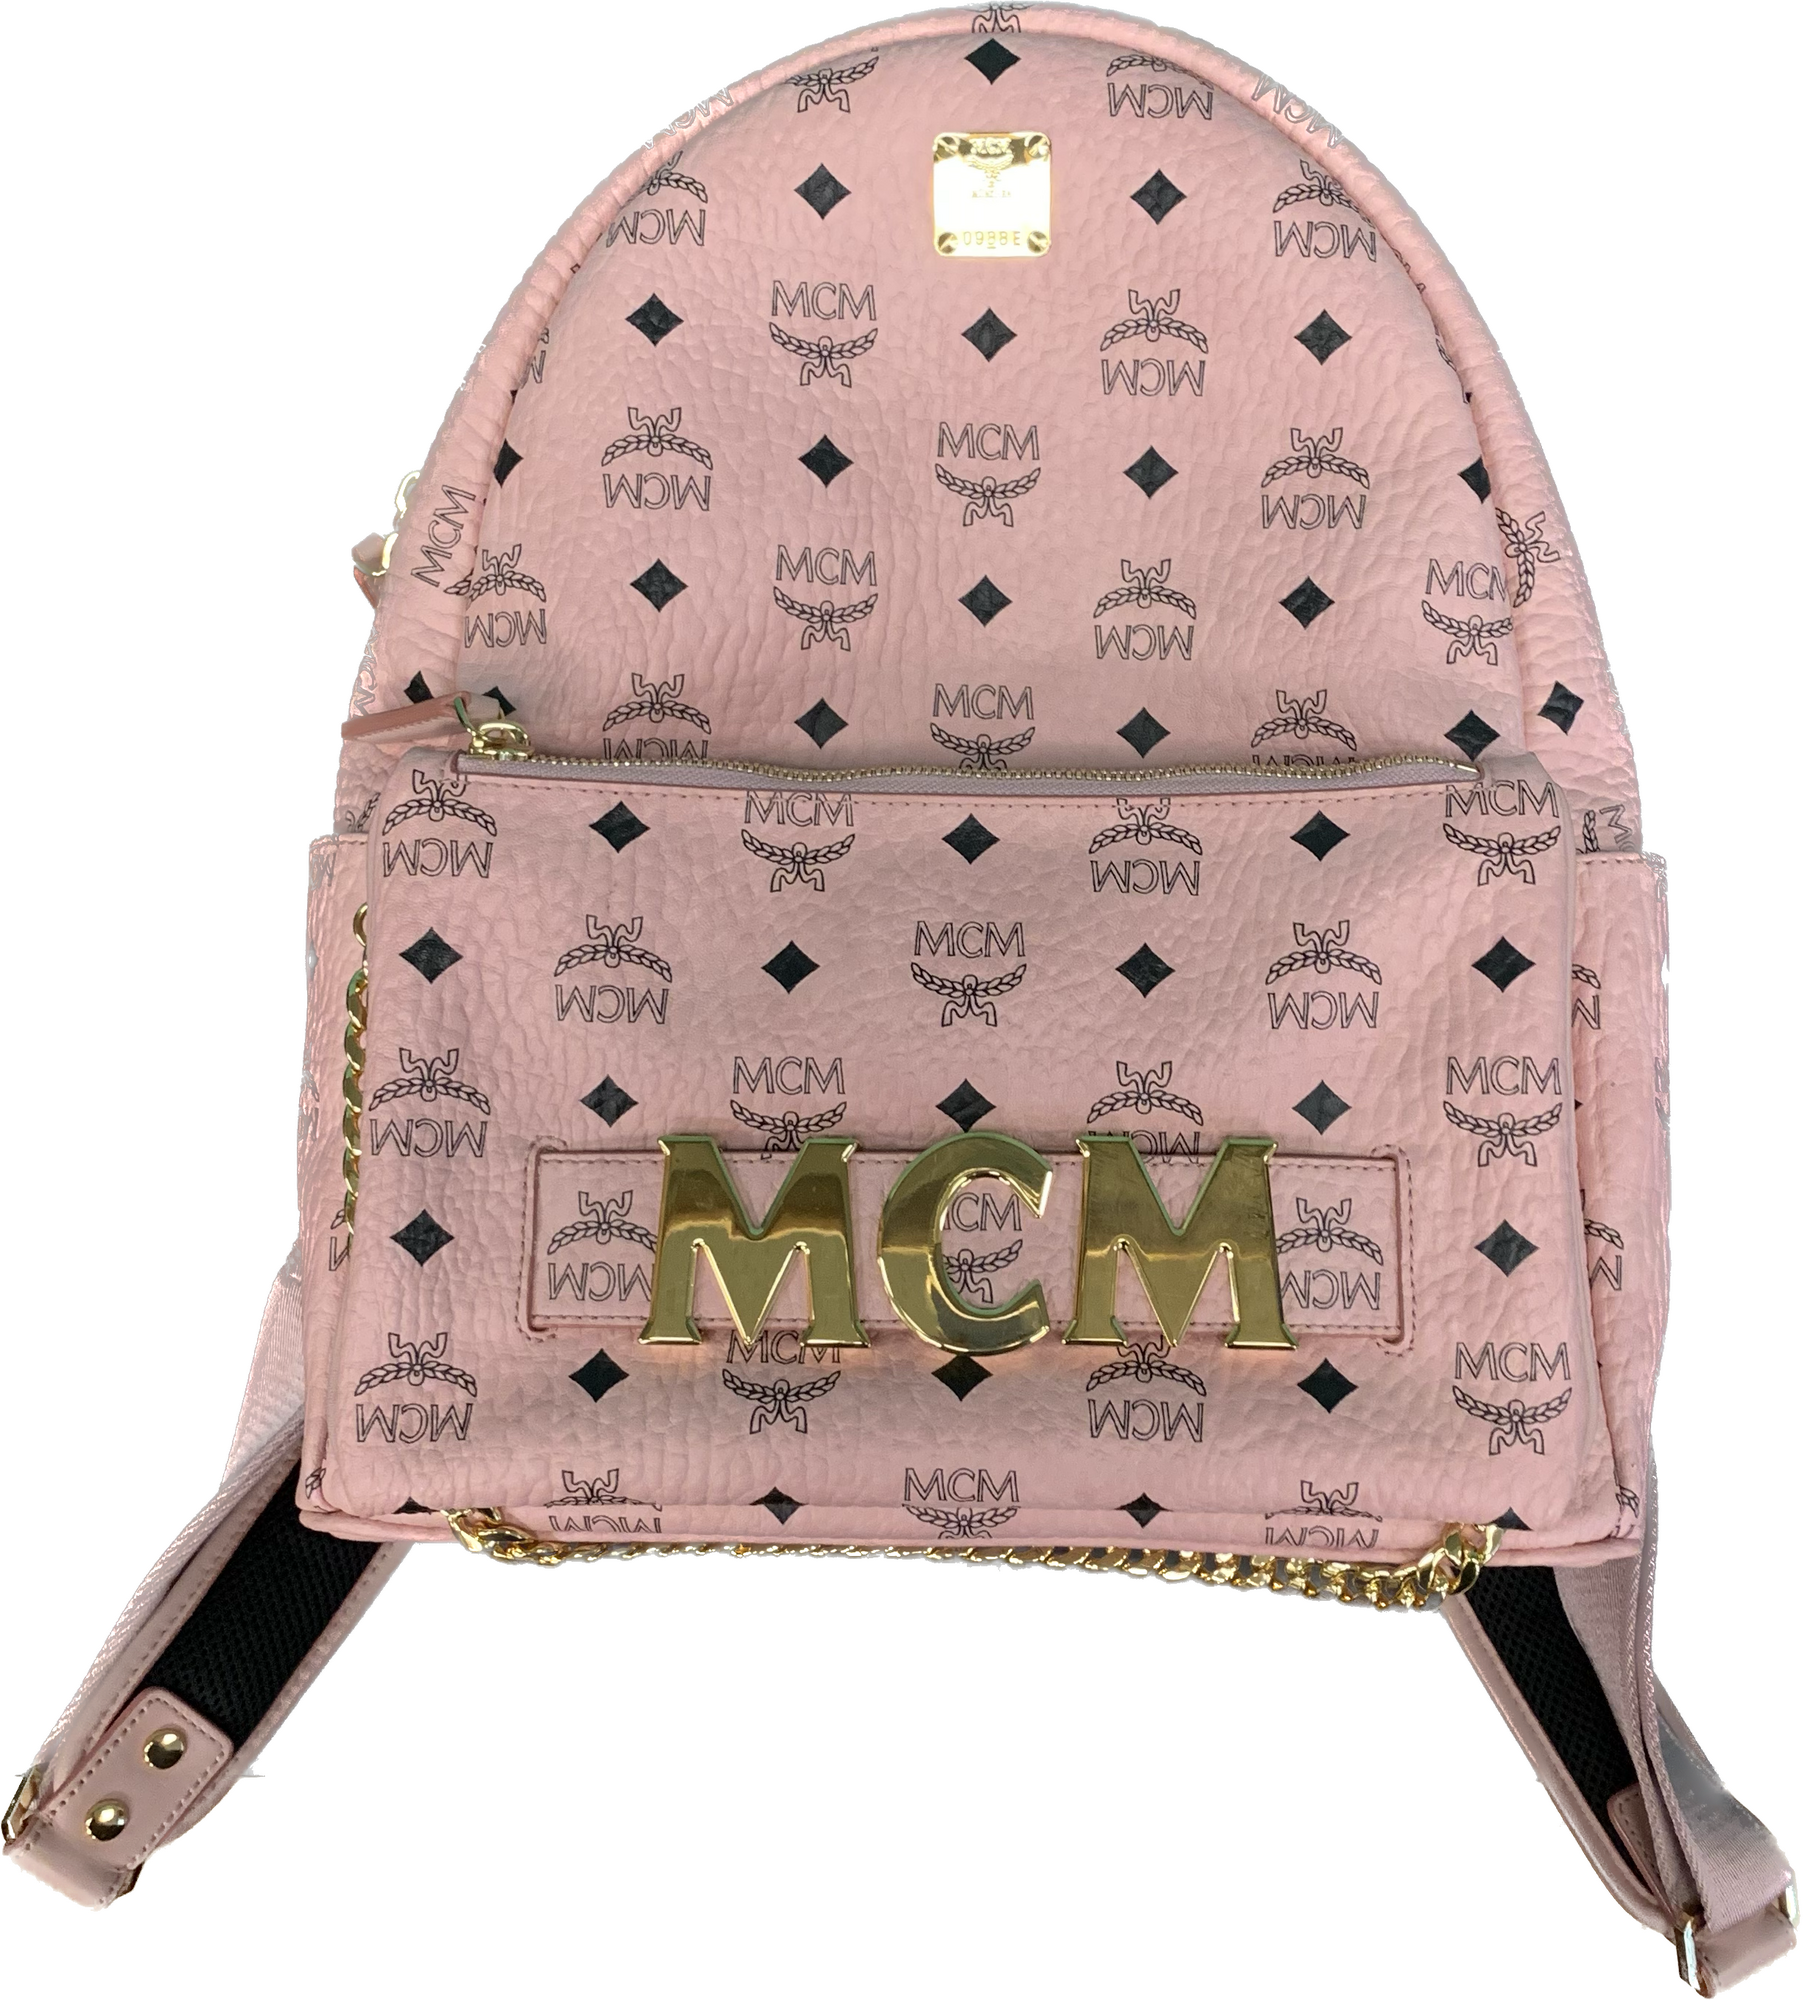 MCM Stark Logogram
Pink Blk
Size: Backpack